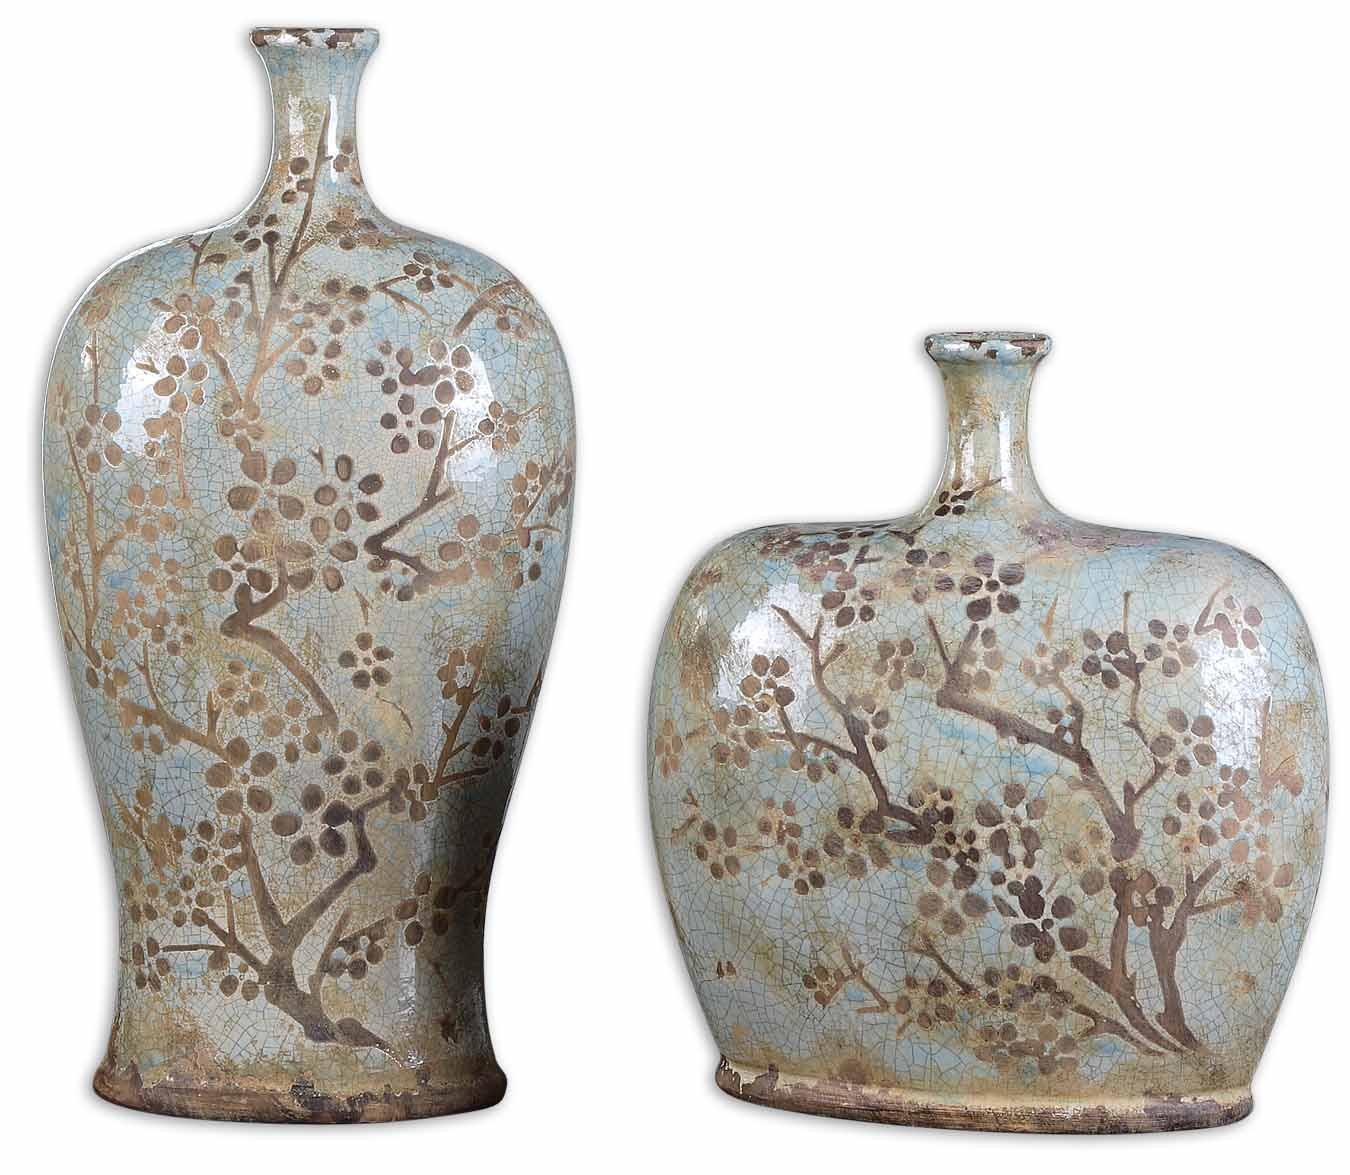 Uttermost Citrita Decorative Ceramic Vases - Set of 2